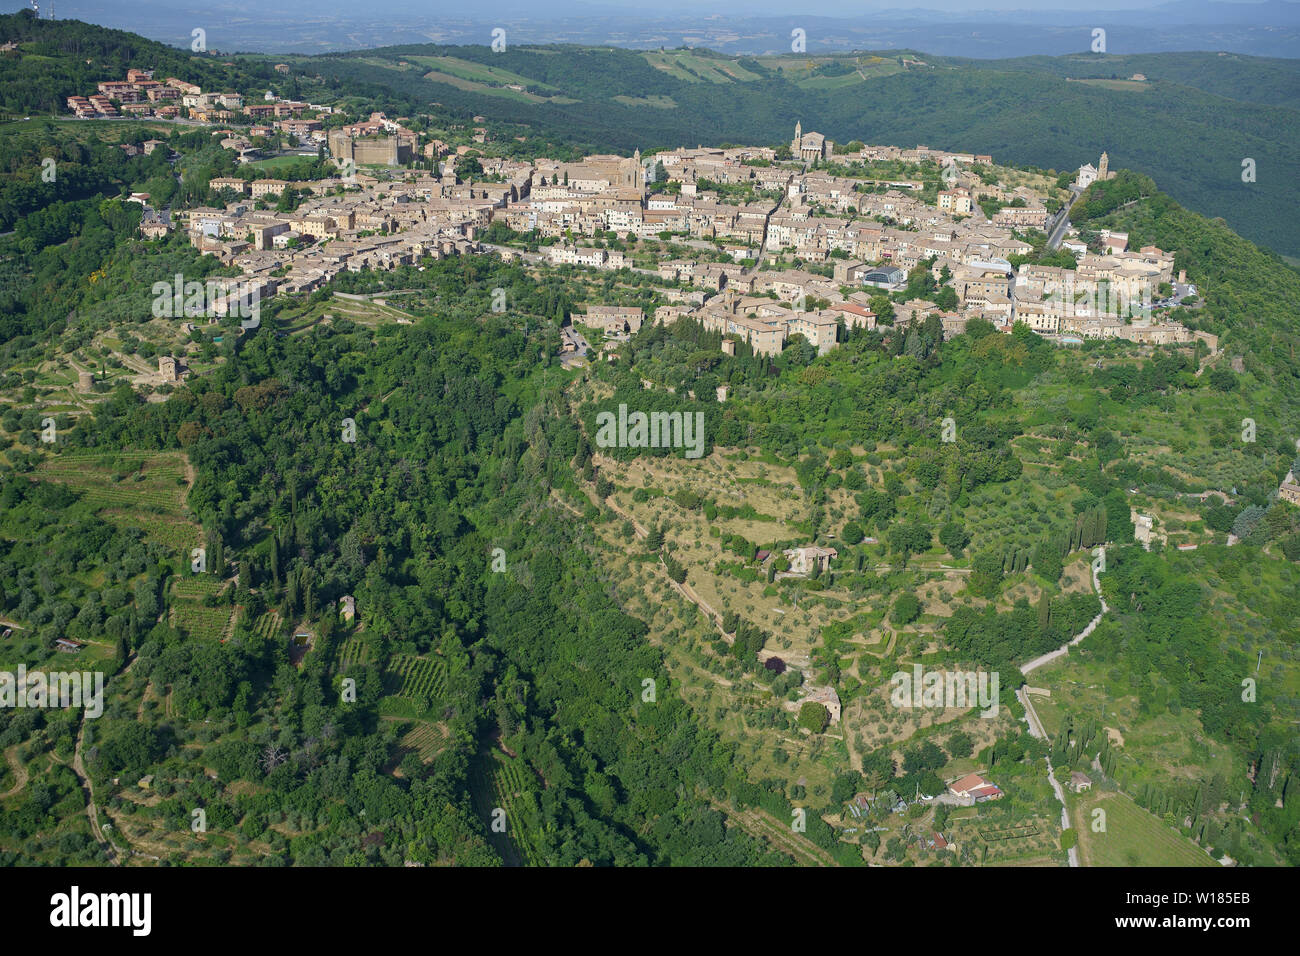 VUE AÉRIENNE. Pittoresque ville médiévale au sommet d'une colline à Val d'Orcia. Montalcino, province de Sienne, Toscane, Italie. Banque D'Images